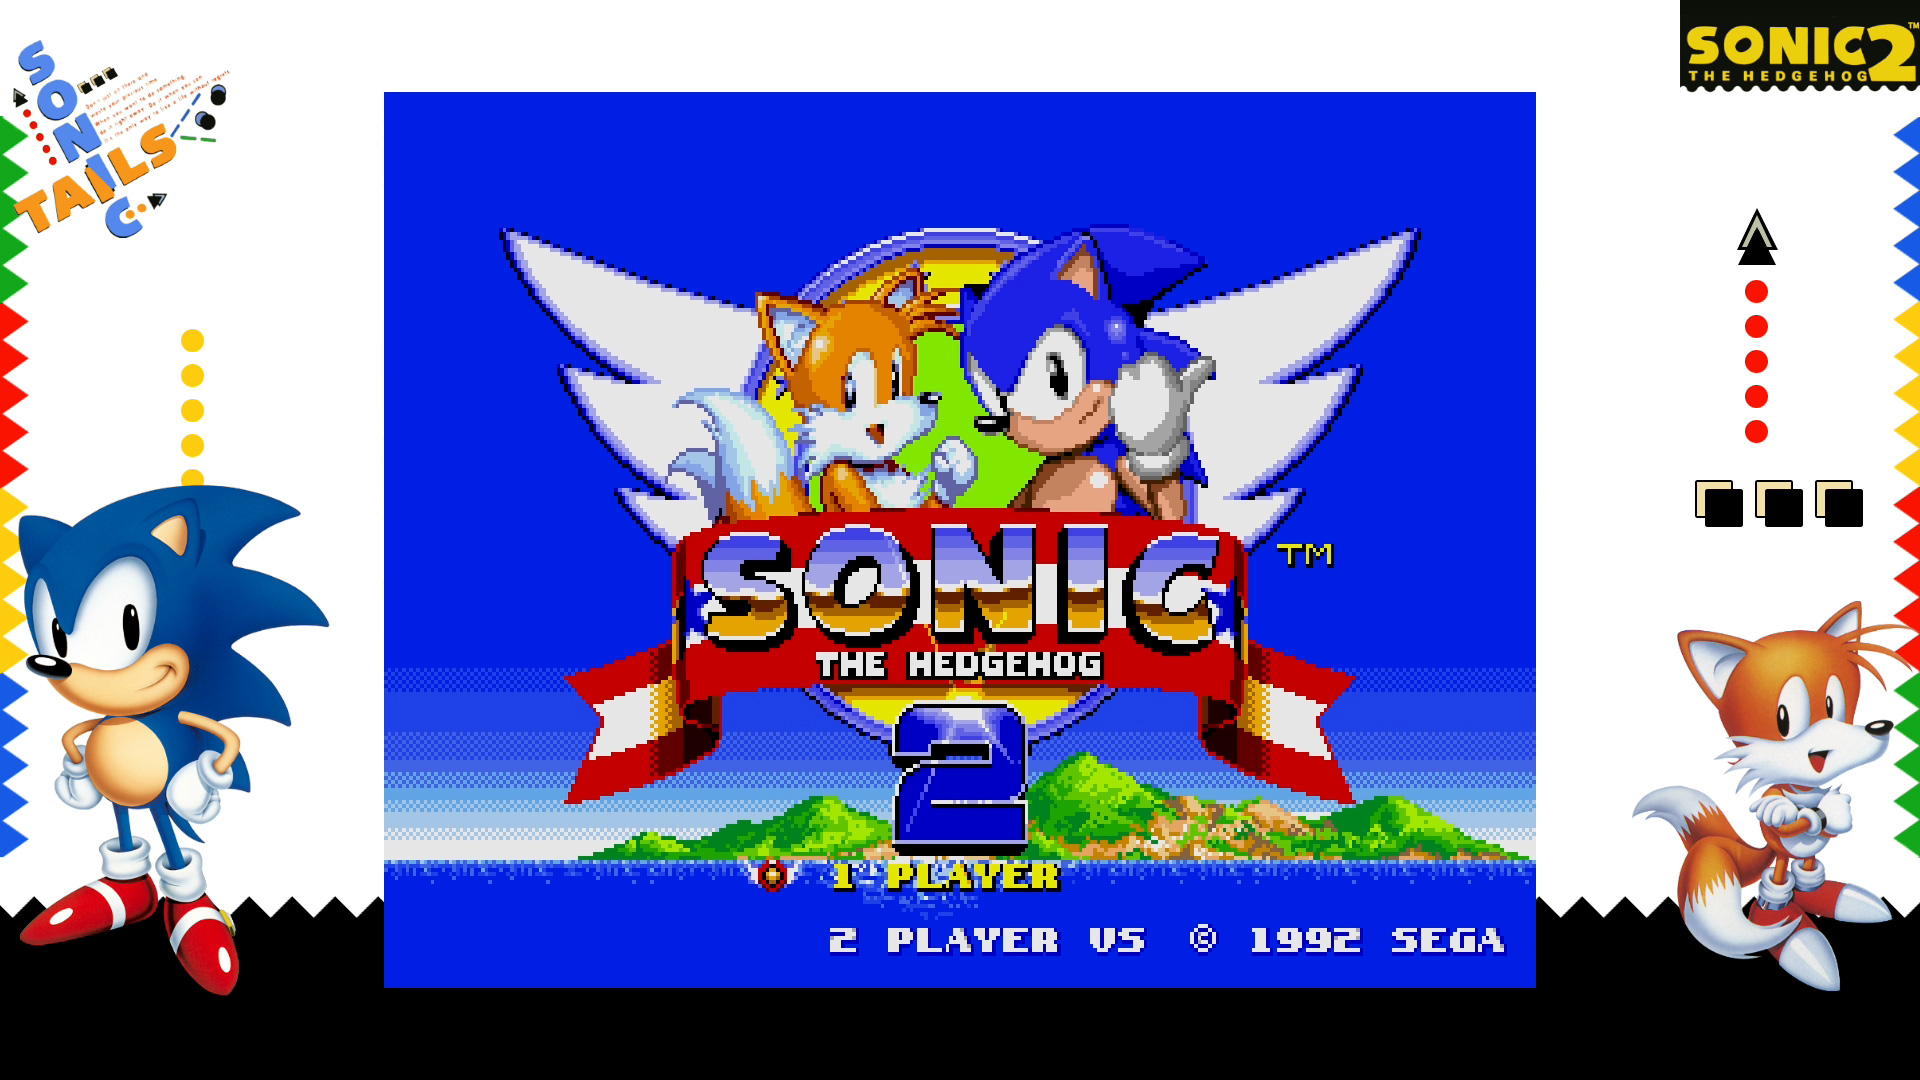 Sonic the hedgehog on sega genesis